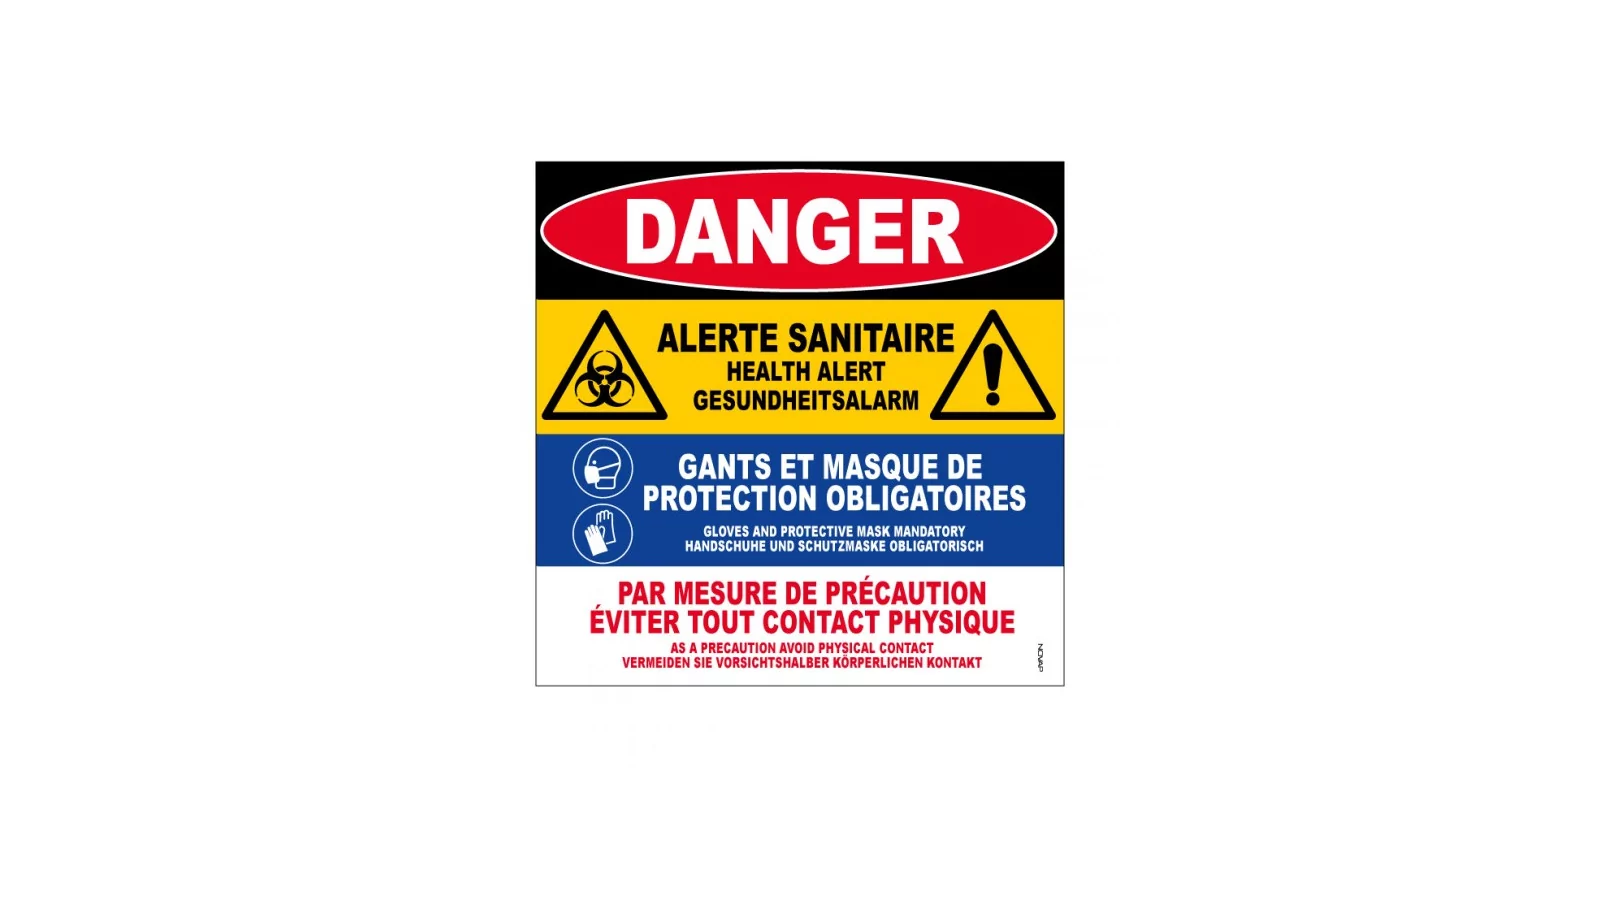 Panneau "Danger alerte sanitaire"